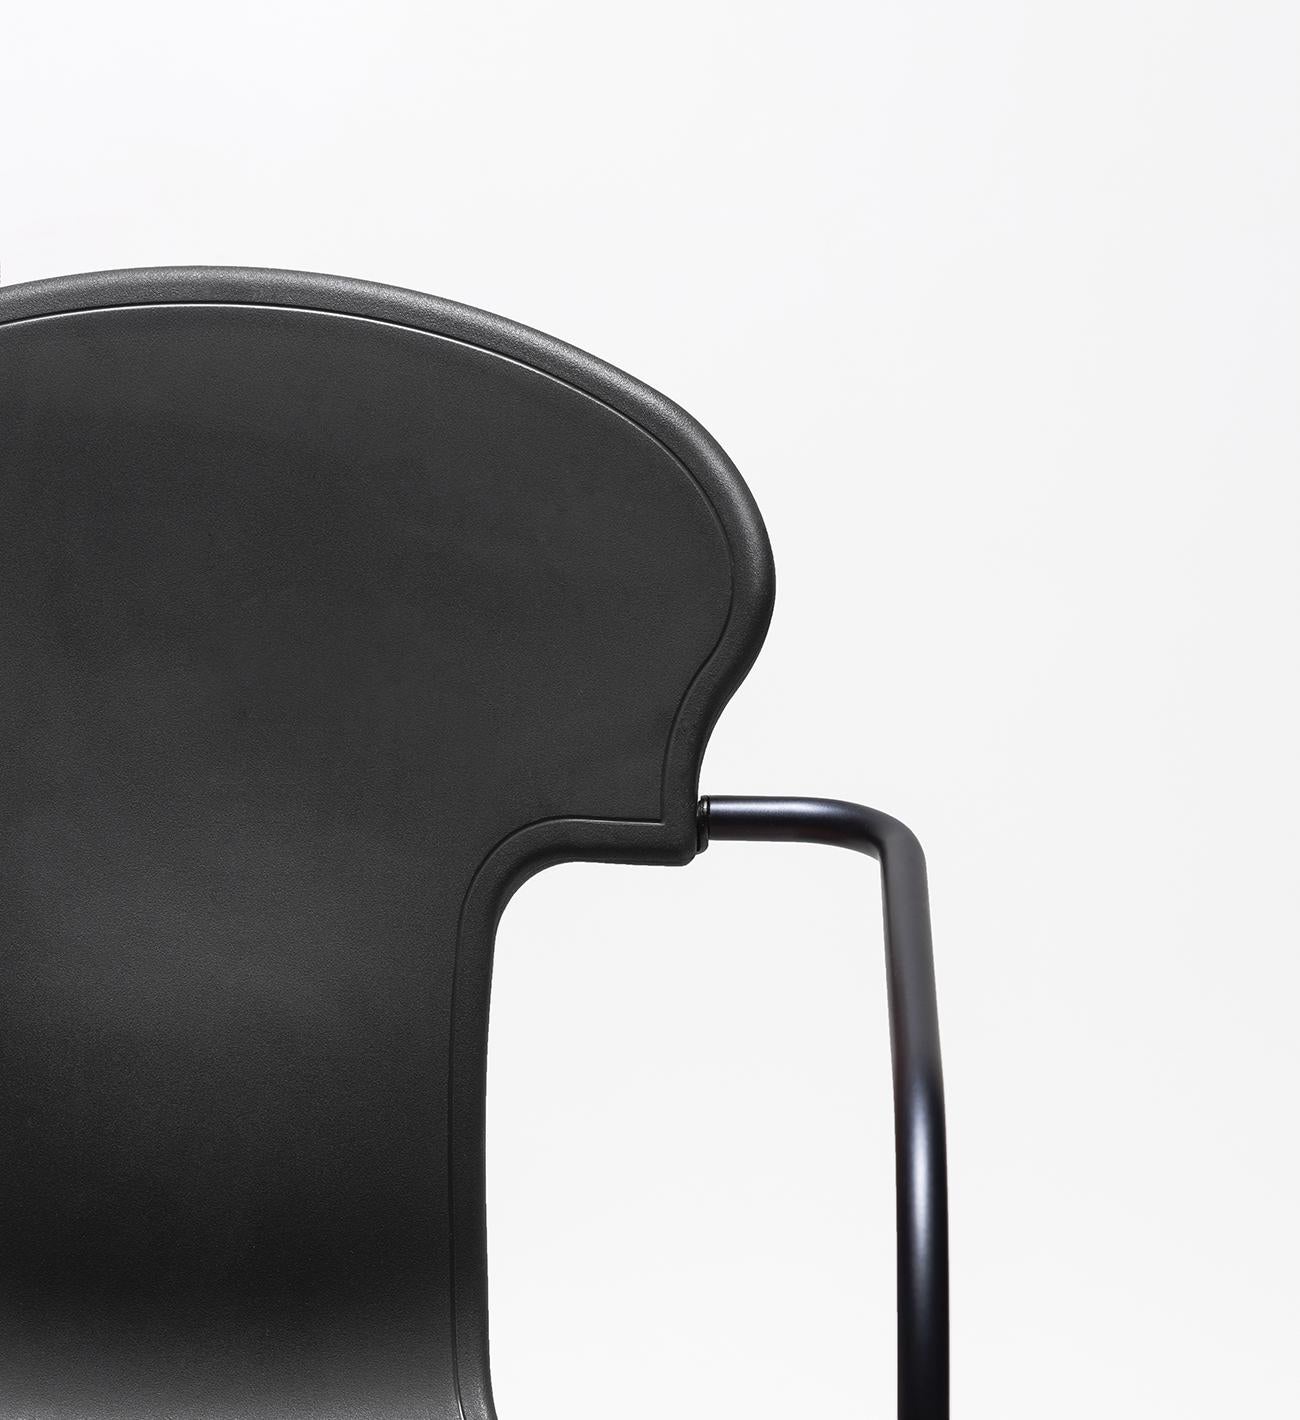 2008 überarbeitete Oscar Tusquets sein berühmtes Design des Various-Stuhls und entwarf diese kleinere und aktualisierte Version in anodischem Schwarz.

Der Sitz ist aus weißem oder schwarzem, gasinjiziertem Polypropylen erhältlich und mit